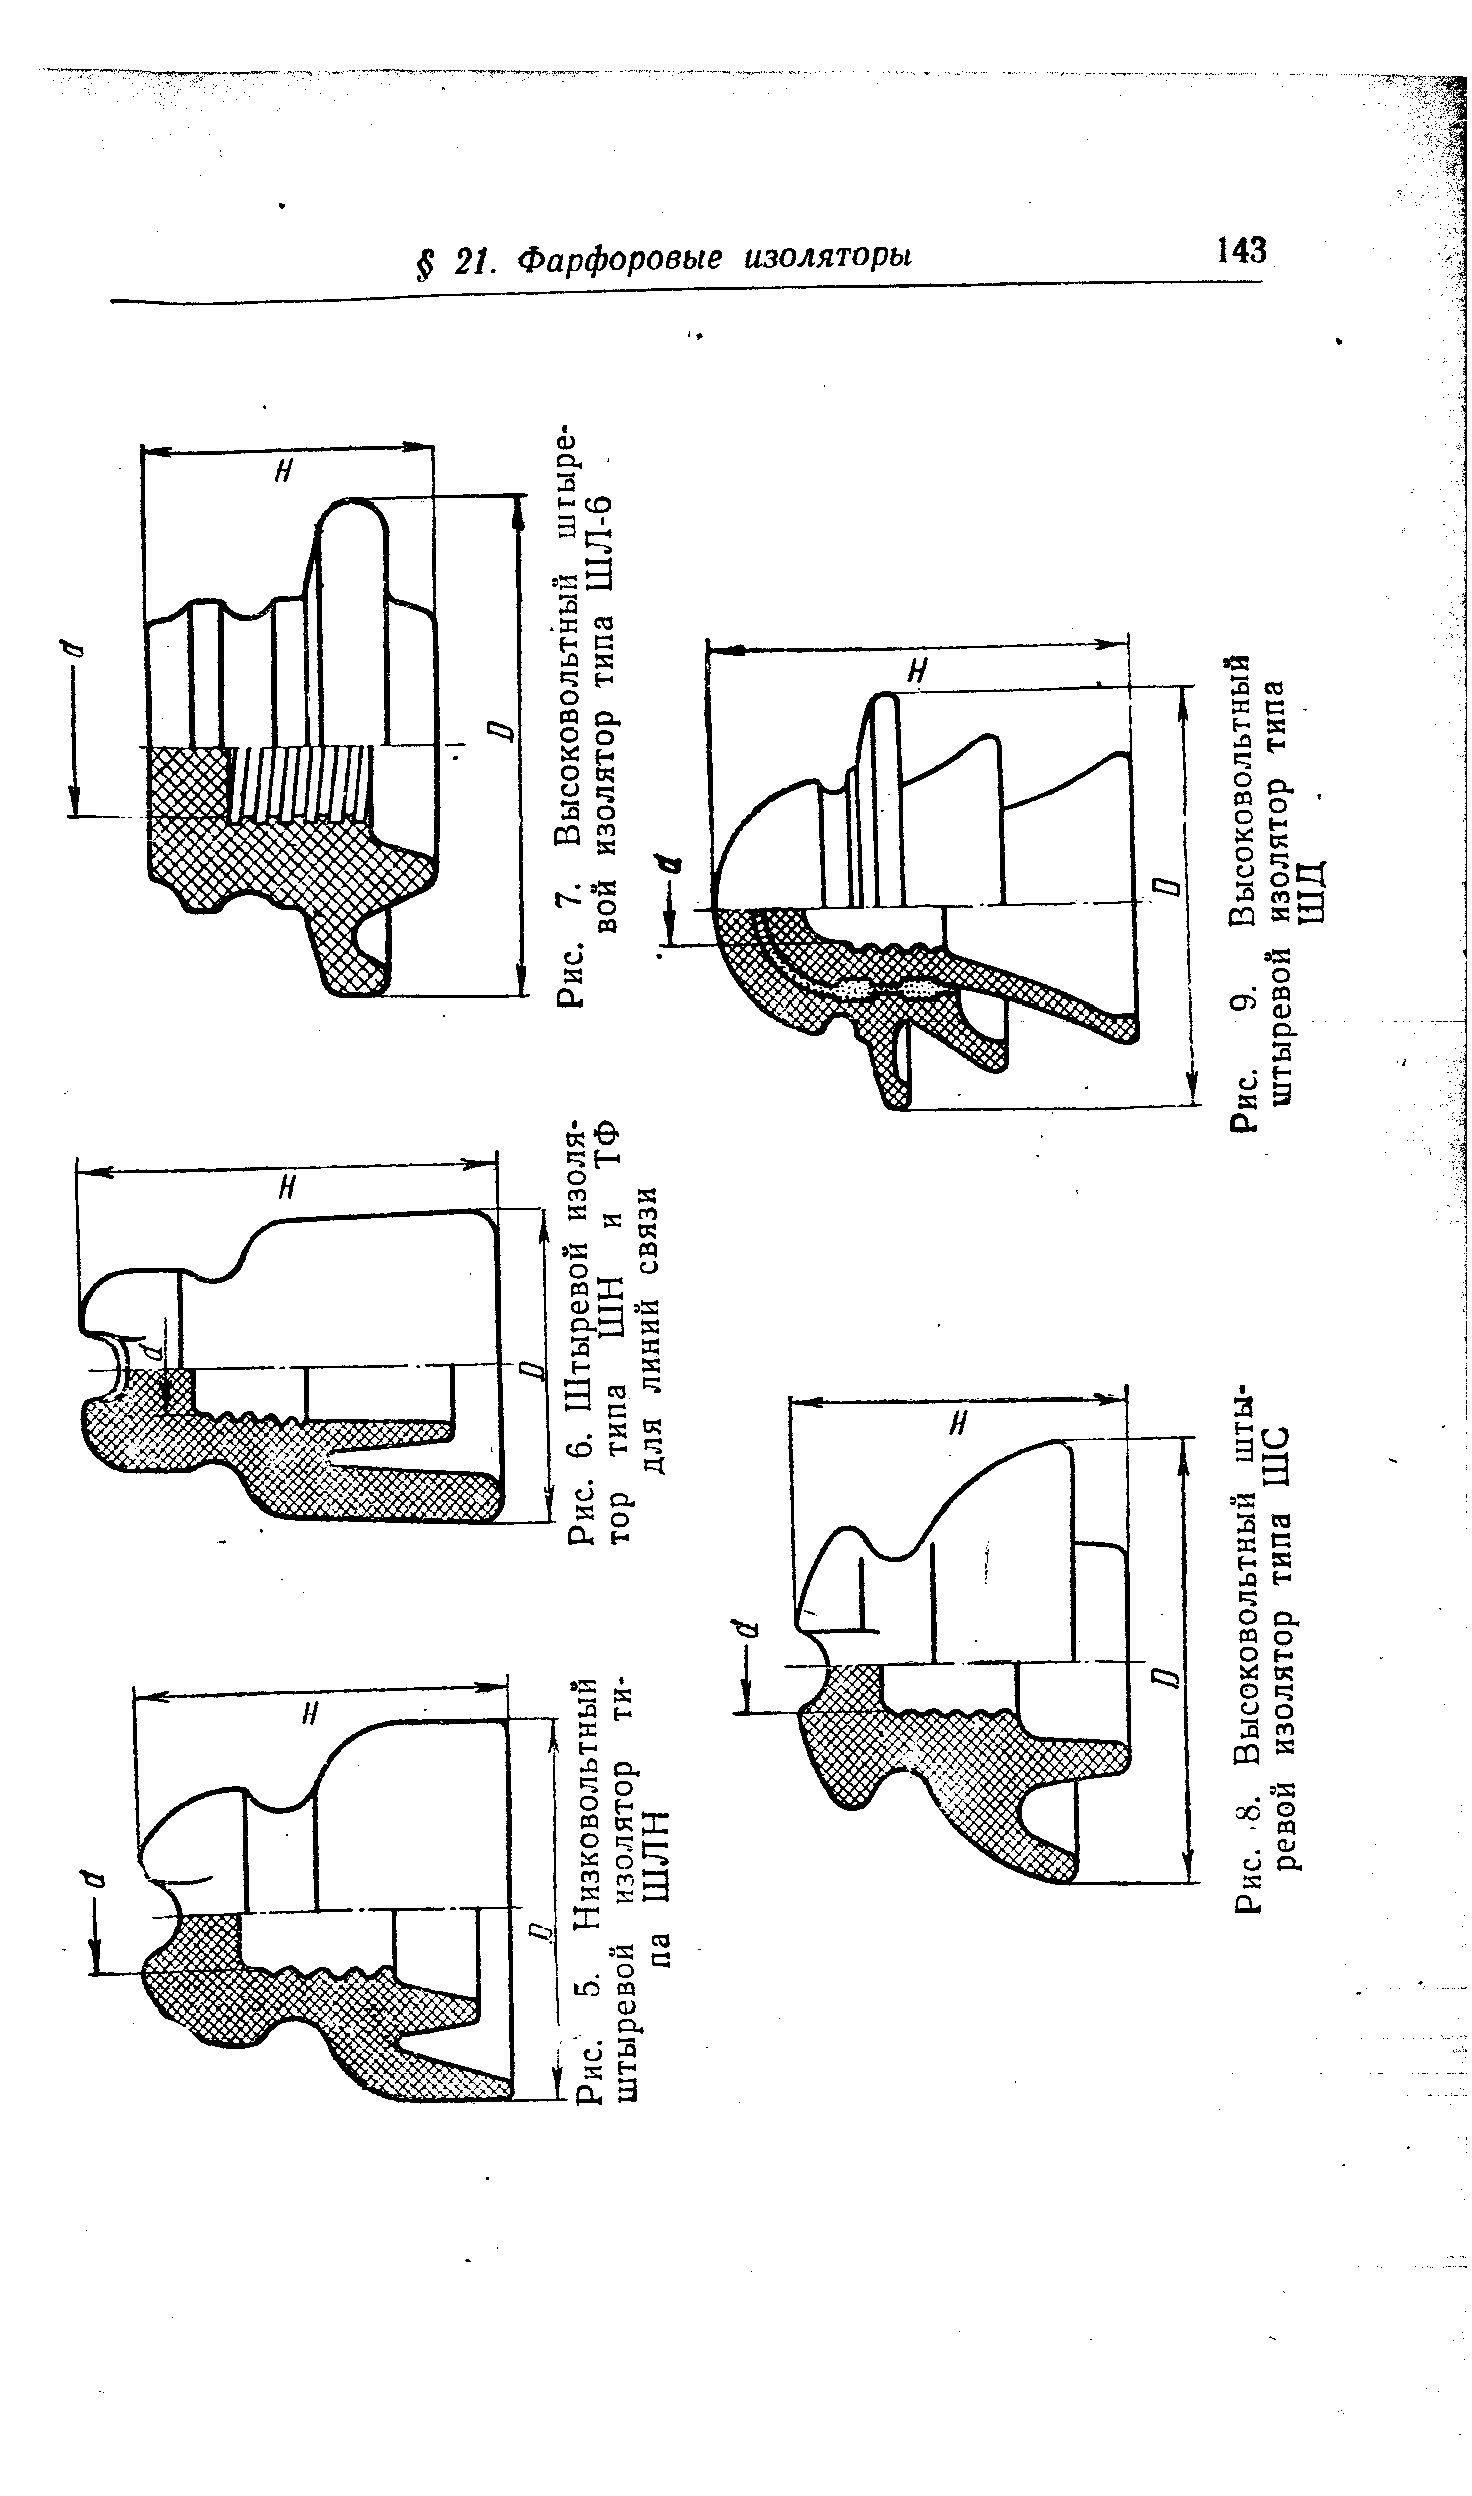 Рис. 5. Низковольтный штыревой изолятор типа ШЛИ
